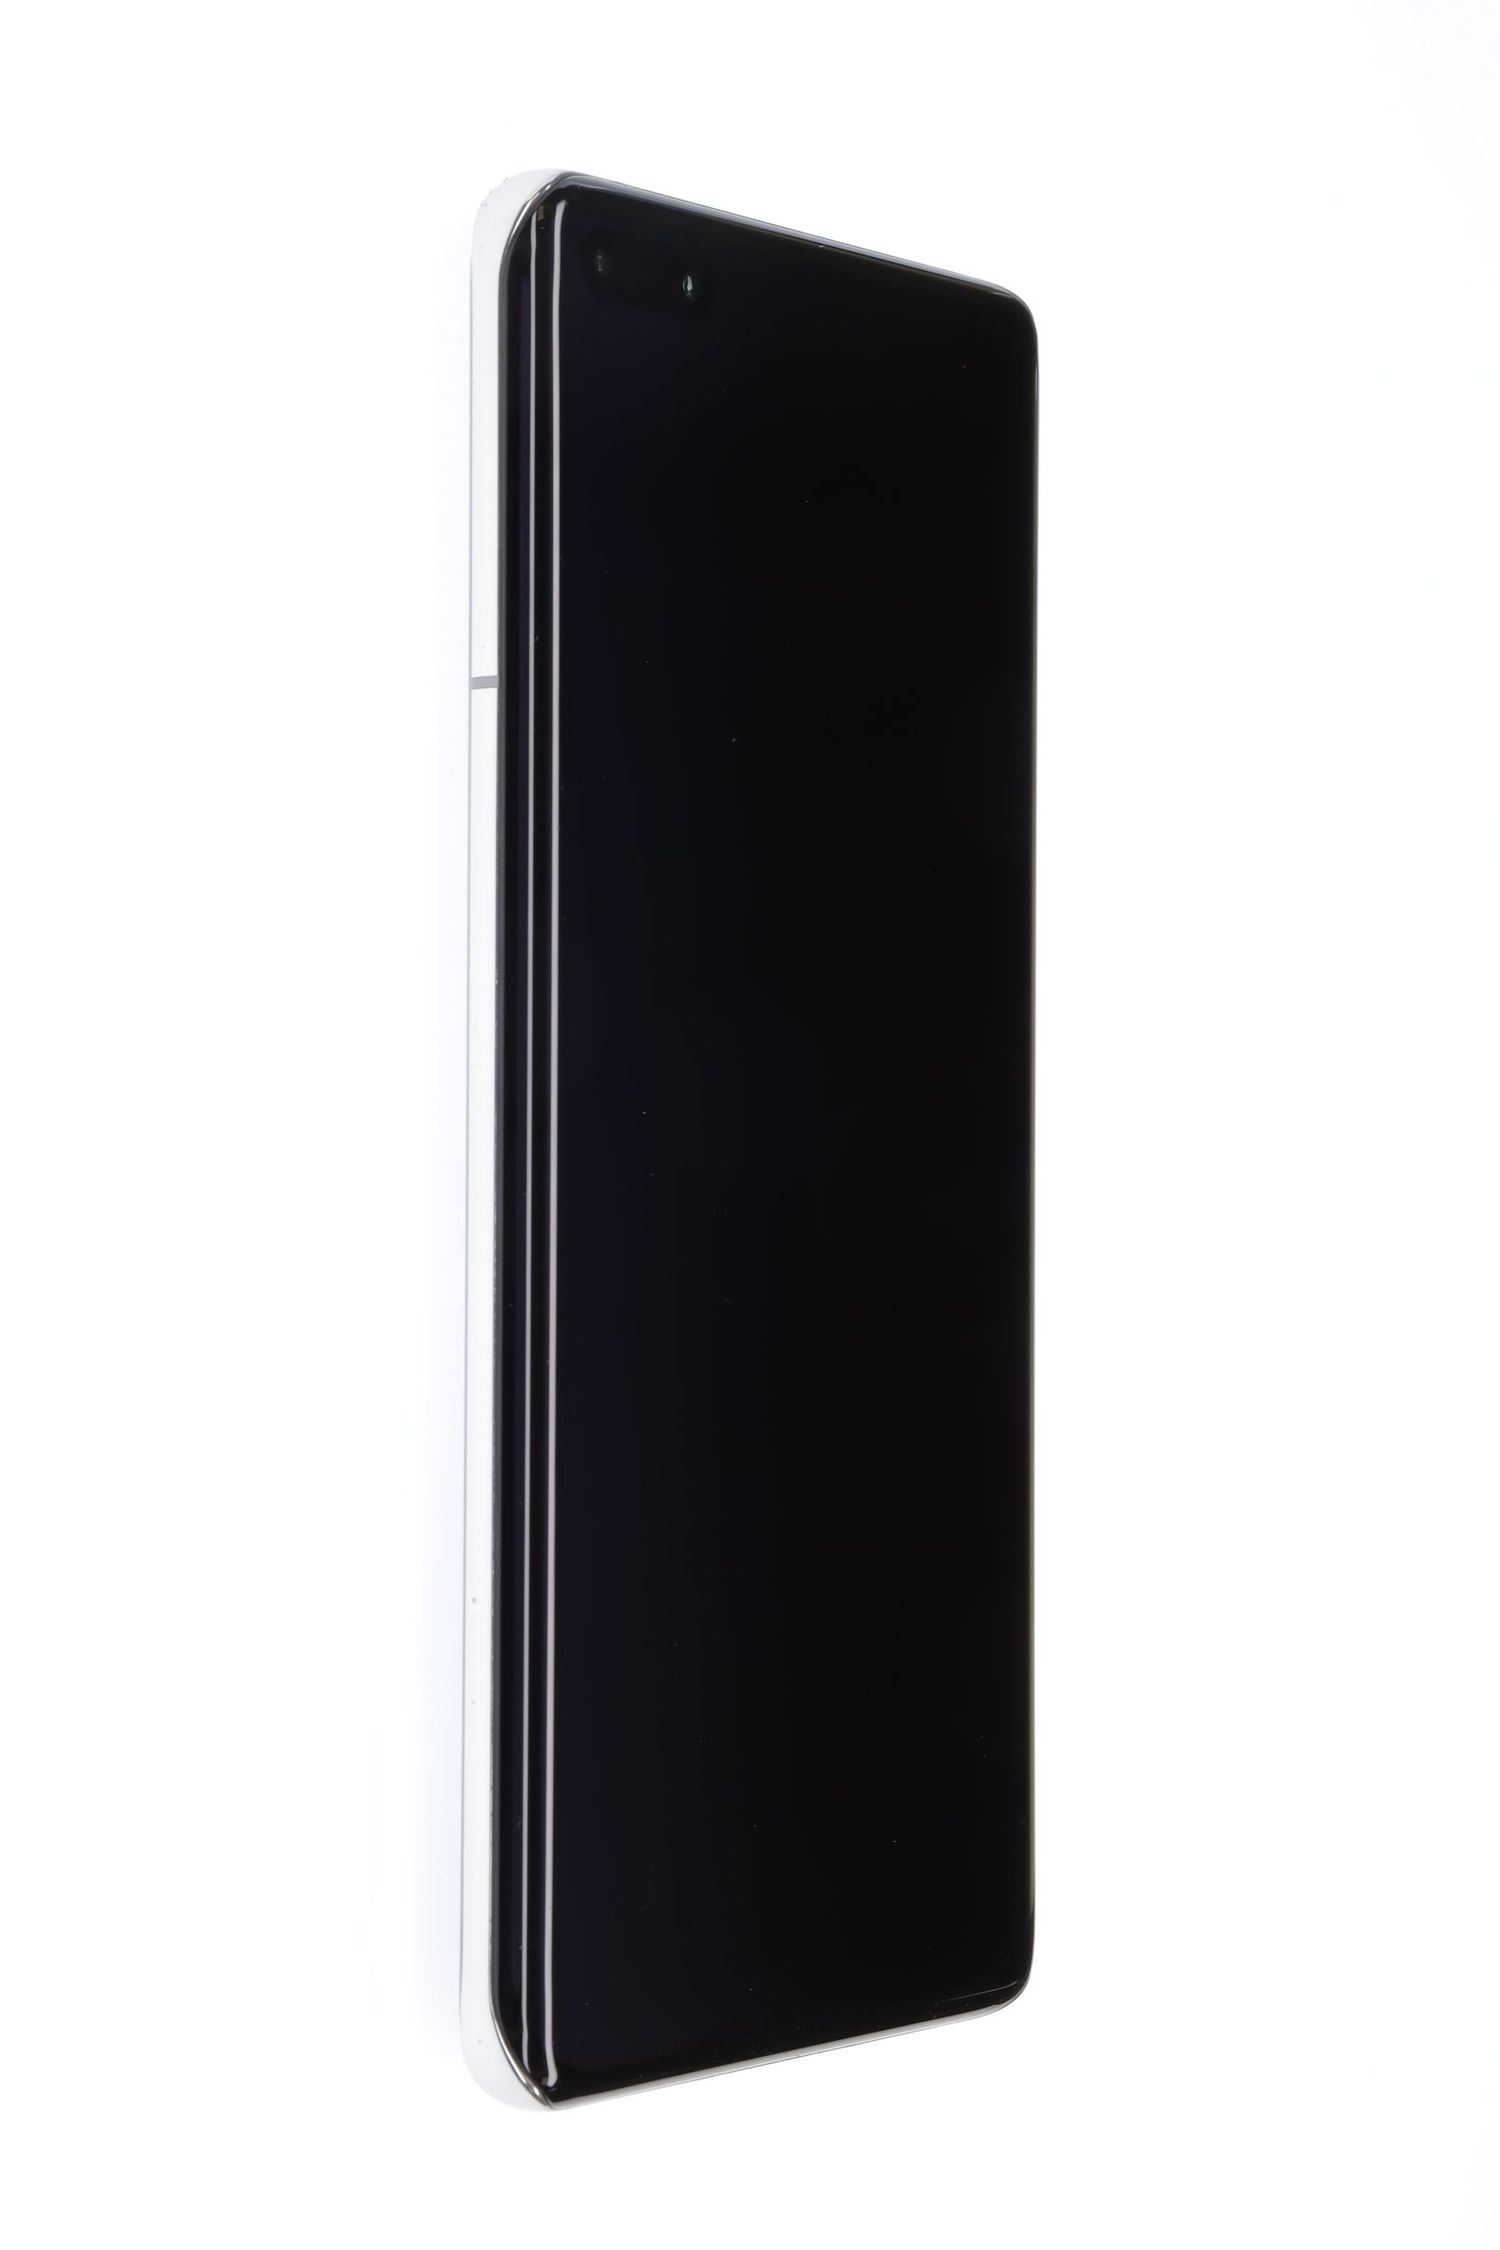 Mobiltelefon Huawei P40 Pro Dual Sim, Silver Frost, 256 GB, Foarte Bun